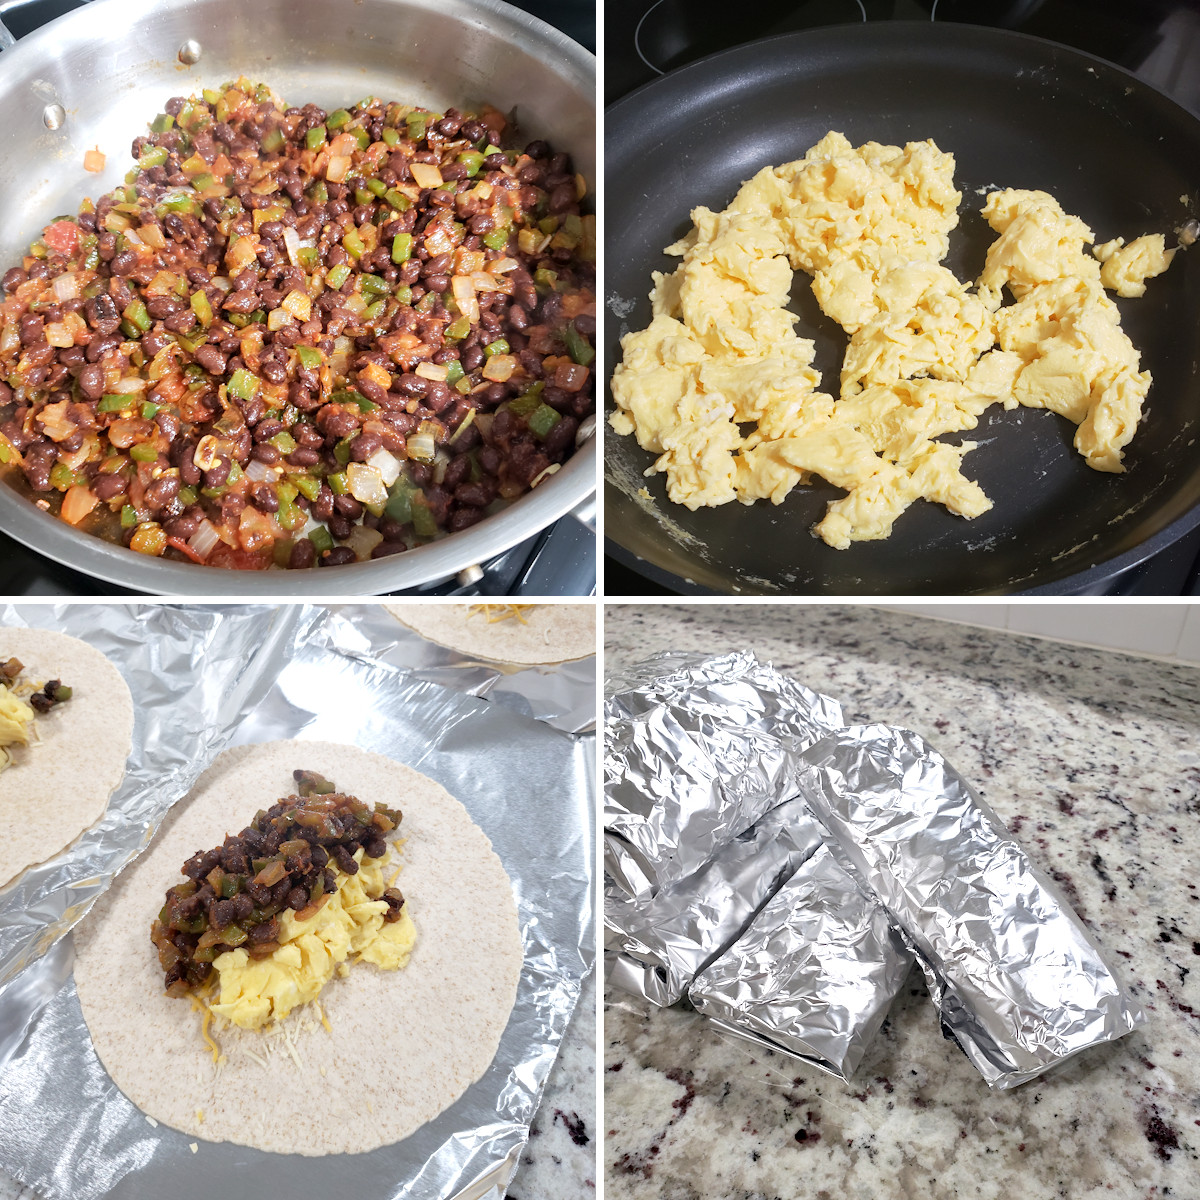 Assembling black bean burritos.